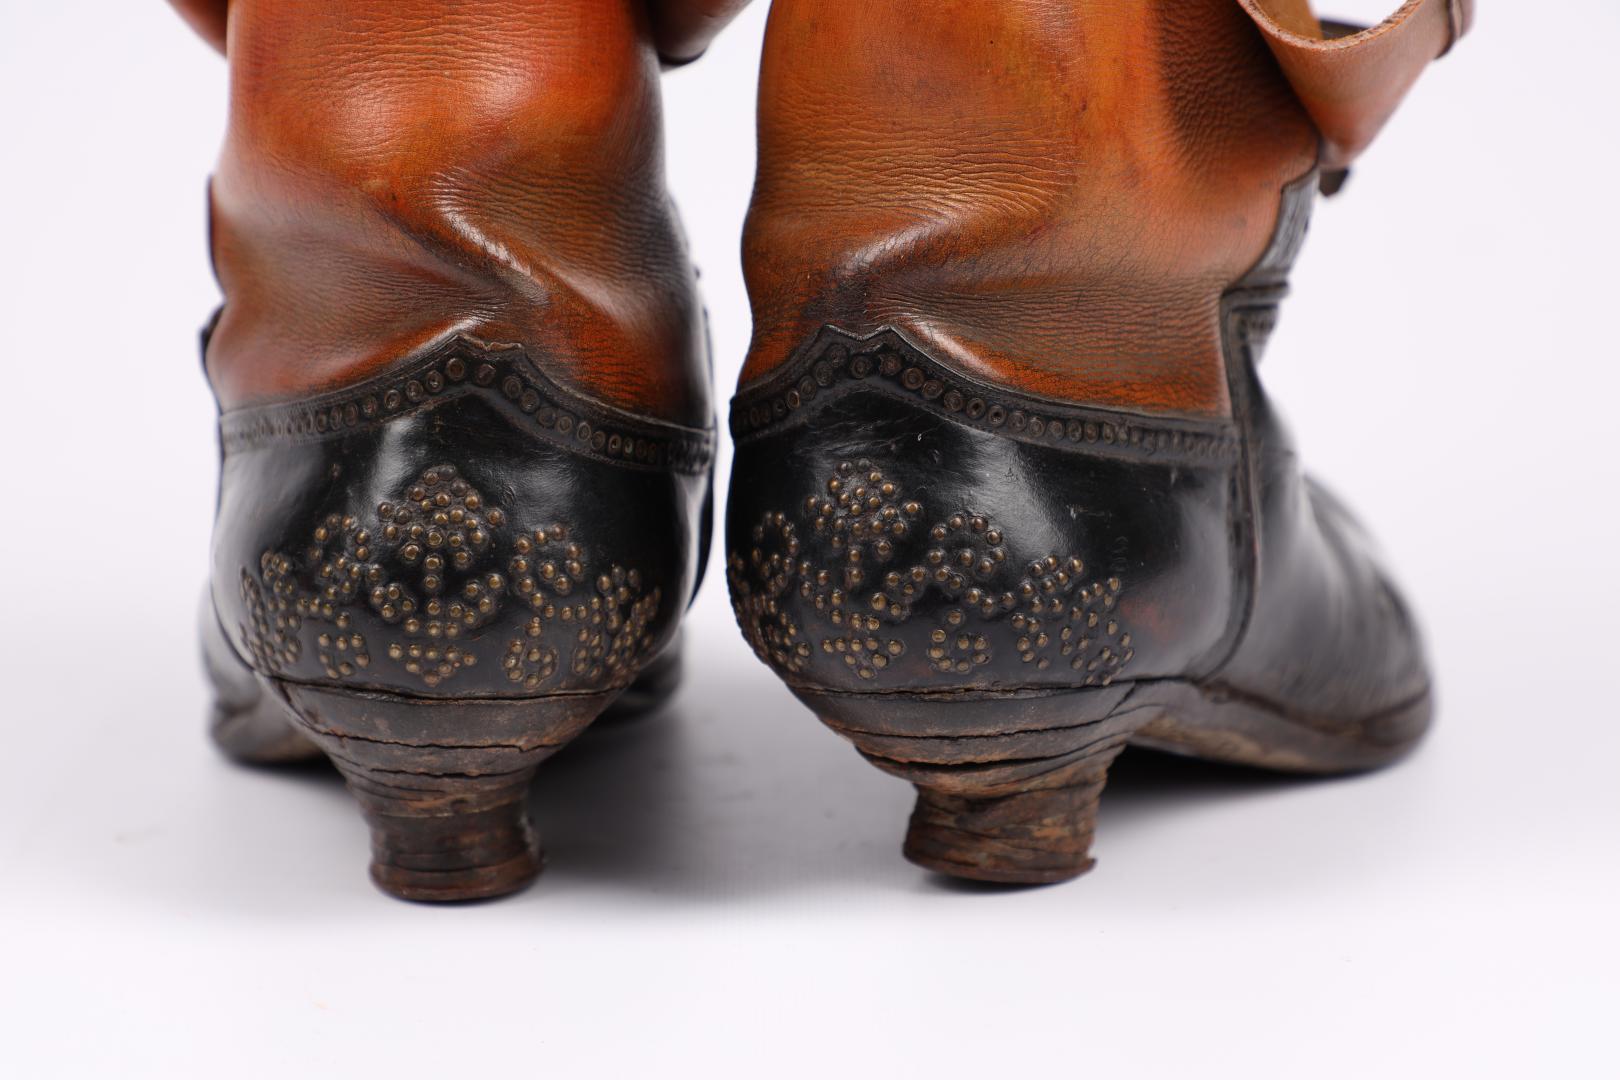 Marigold' women's boots